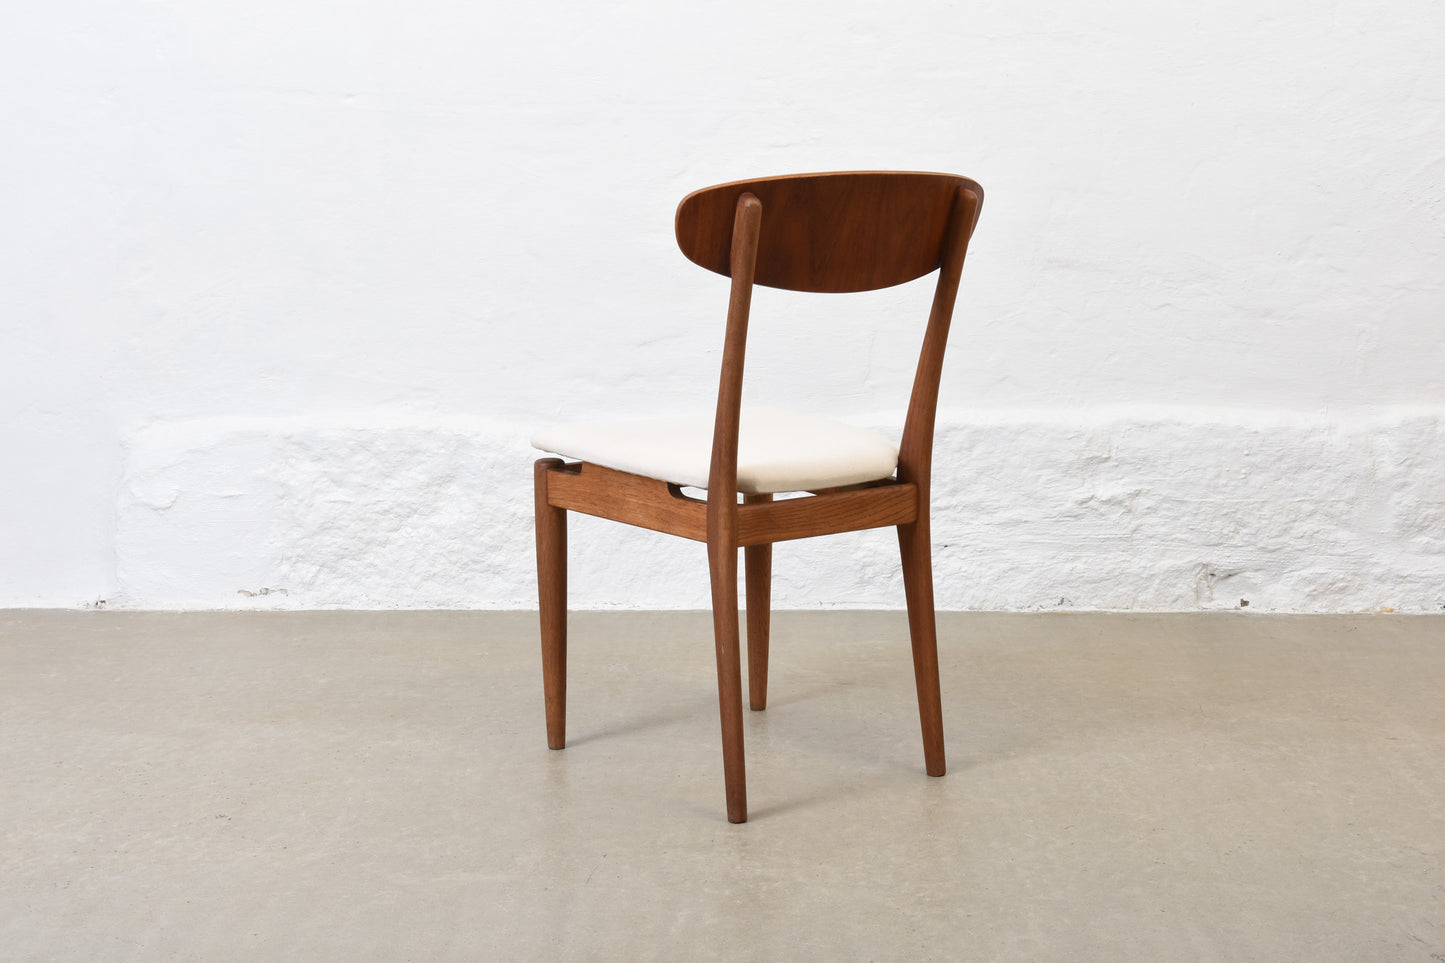 Set of four 1950s teak + oak chairs by Slagelse Møbelværk